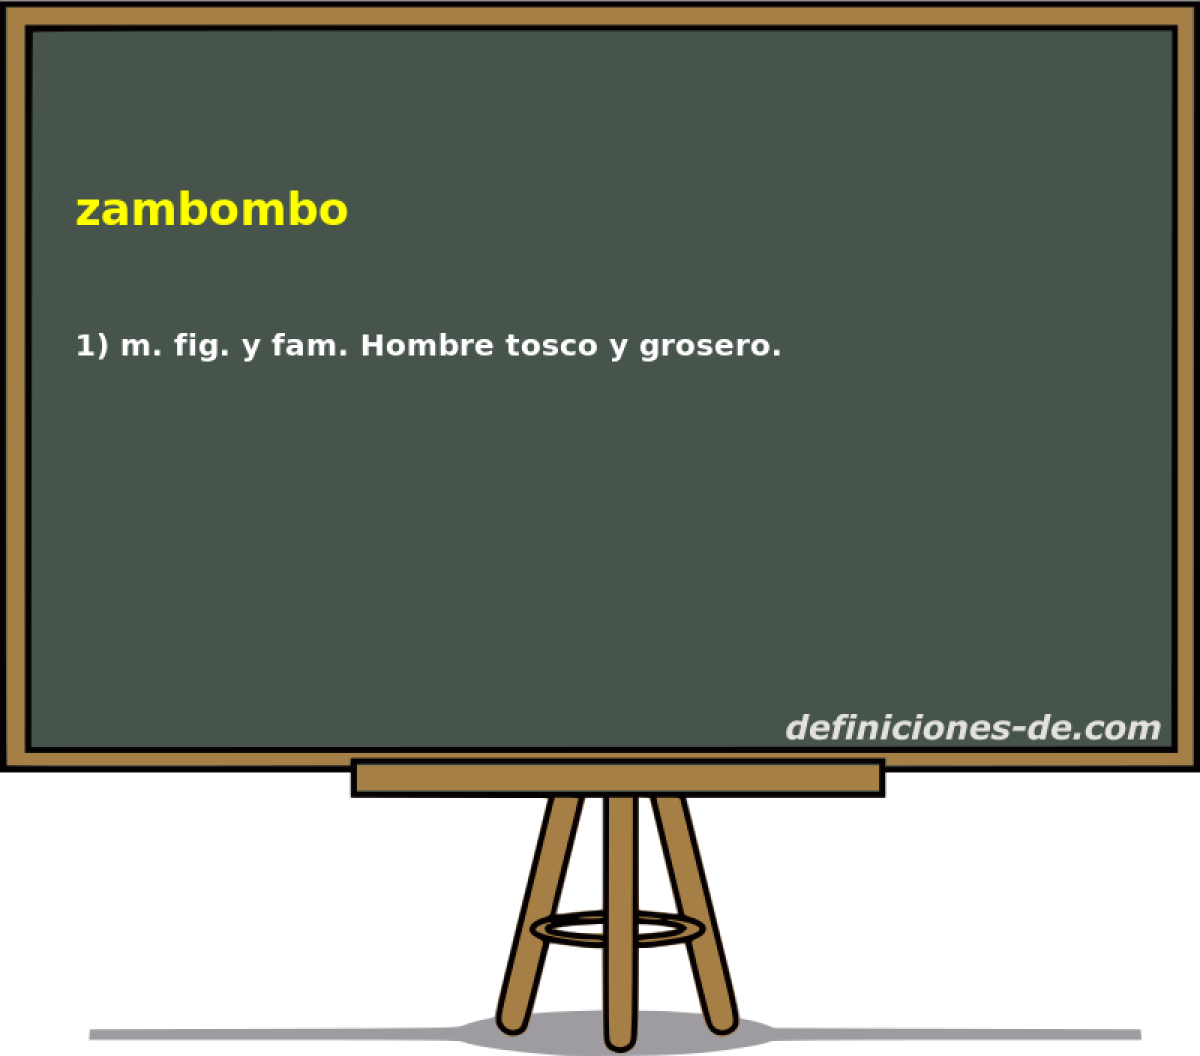 zambombo 